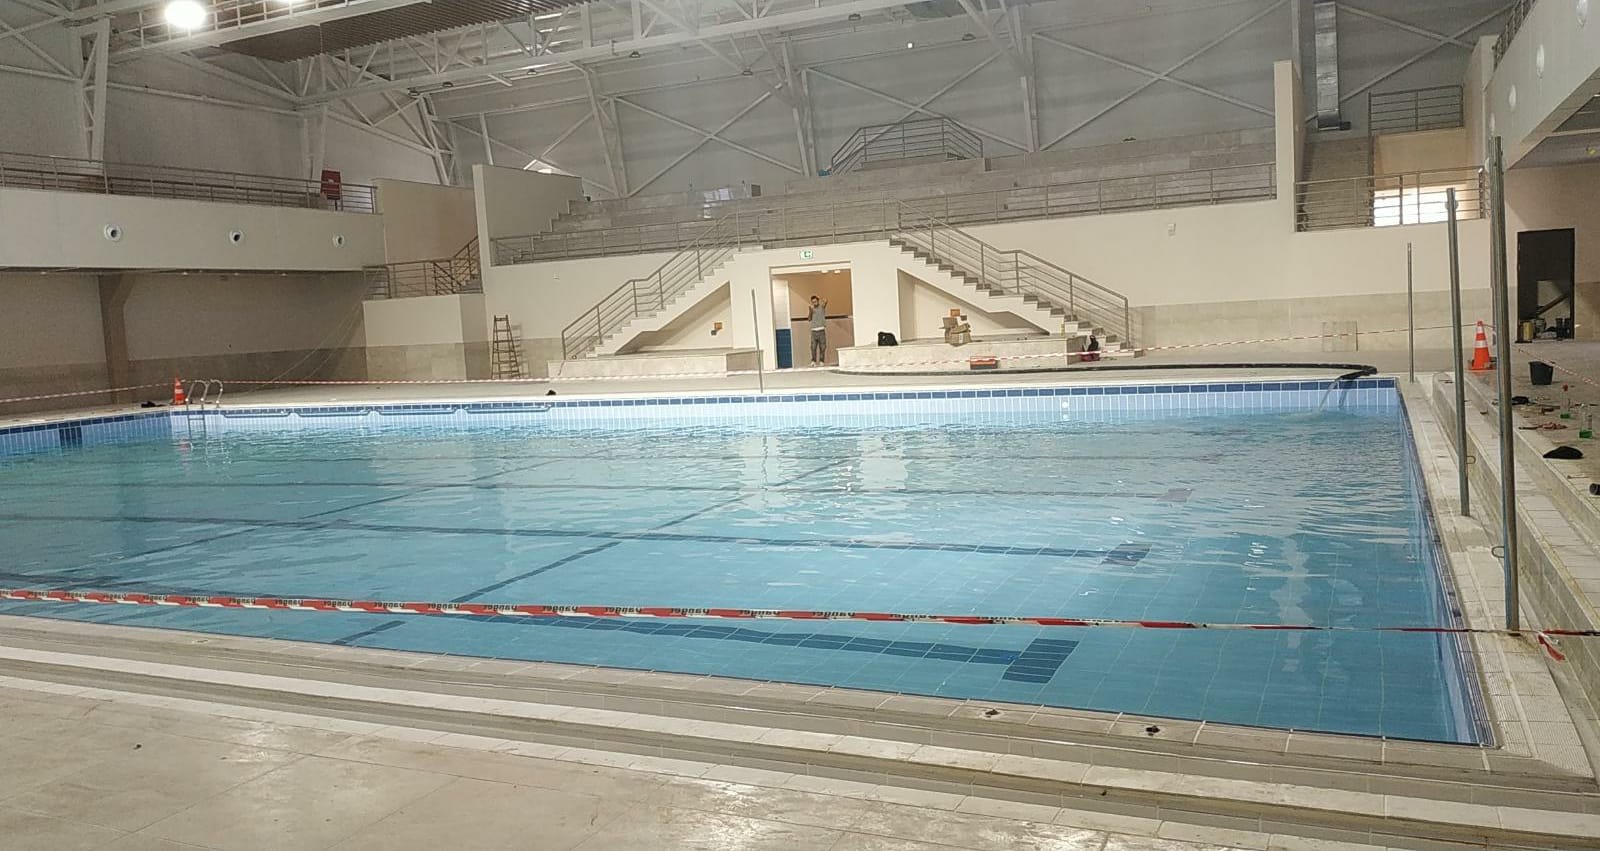 الجامعة تقترب من انتهاء العمل بمشروع المسبح النصف الاولمبي المغلق الاول من نوعه فلسطين